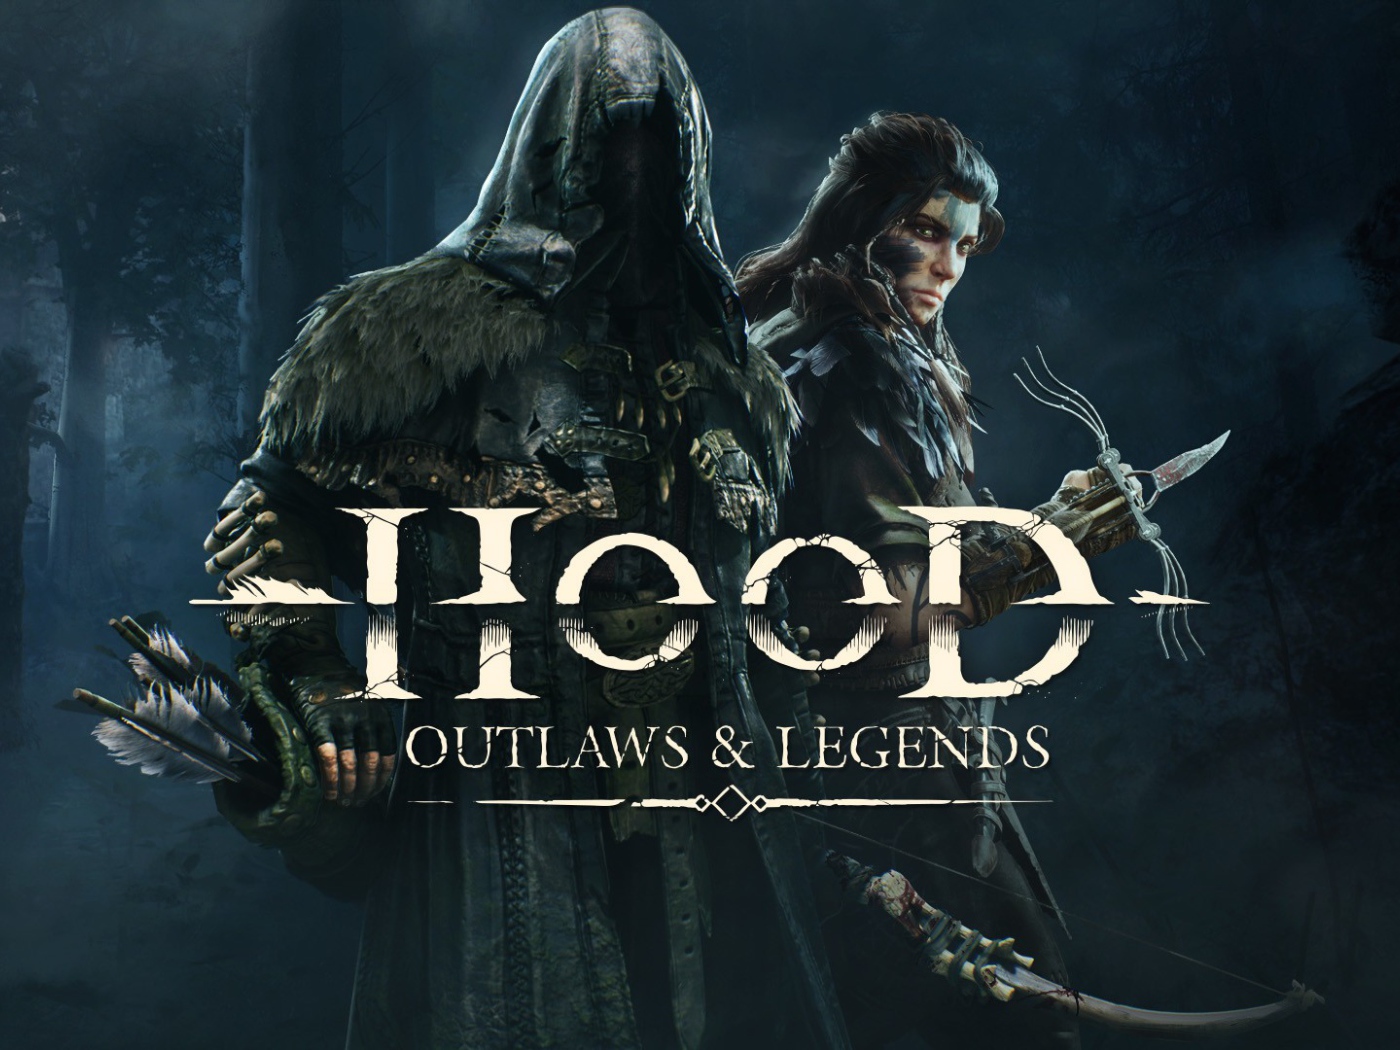 Постер новой компьютерной игры Hood: Outlaws & Legends, 2021